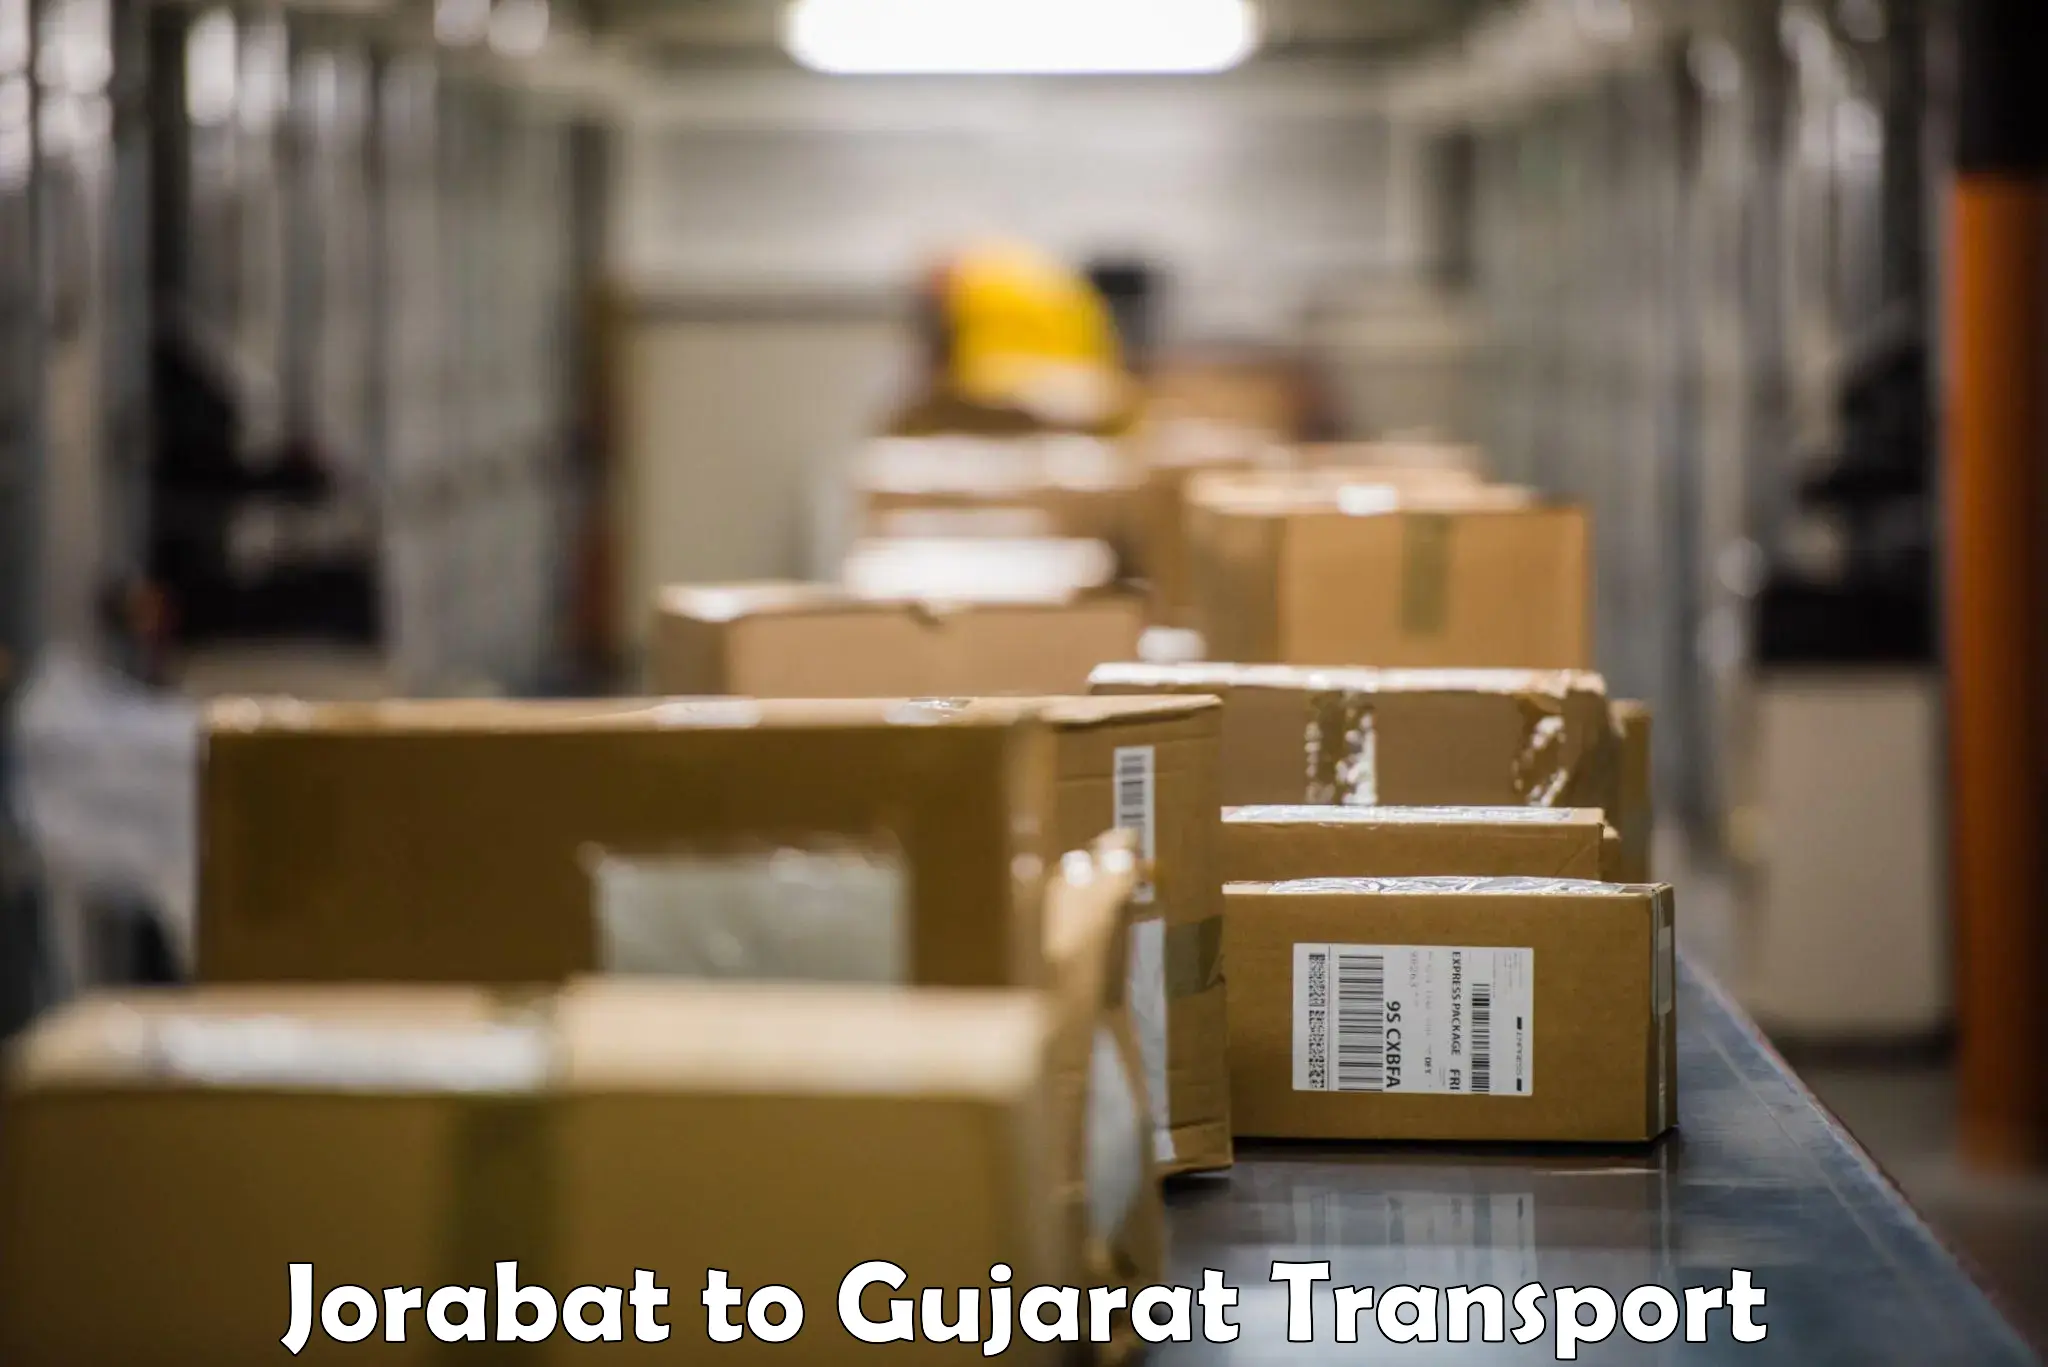 Road transport online services Jorabat to IIT Gandhi Nagar